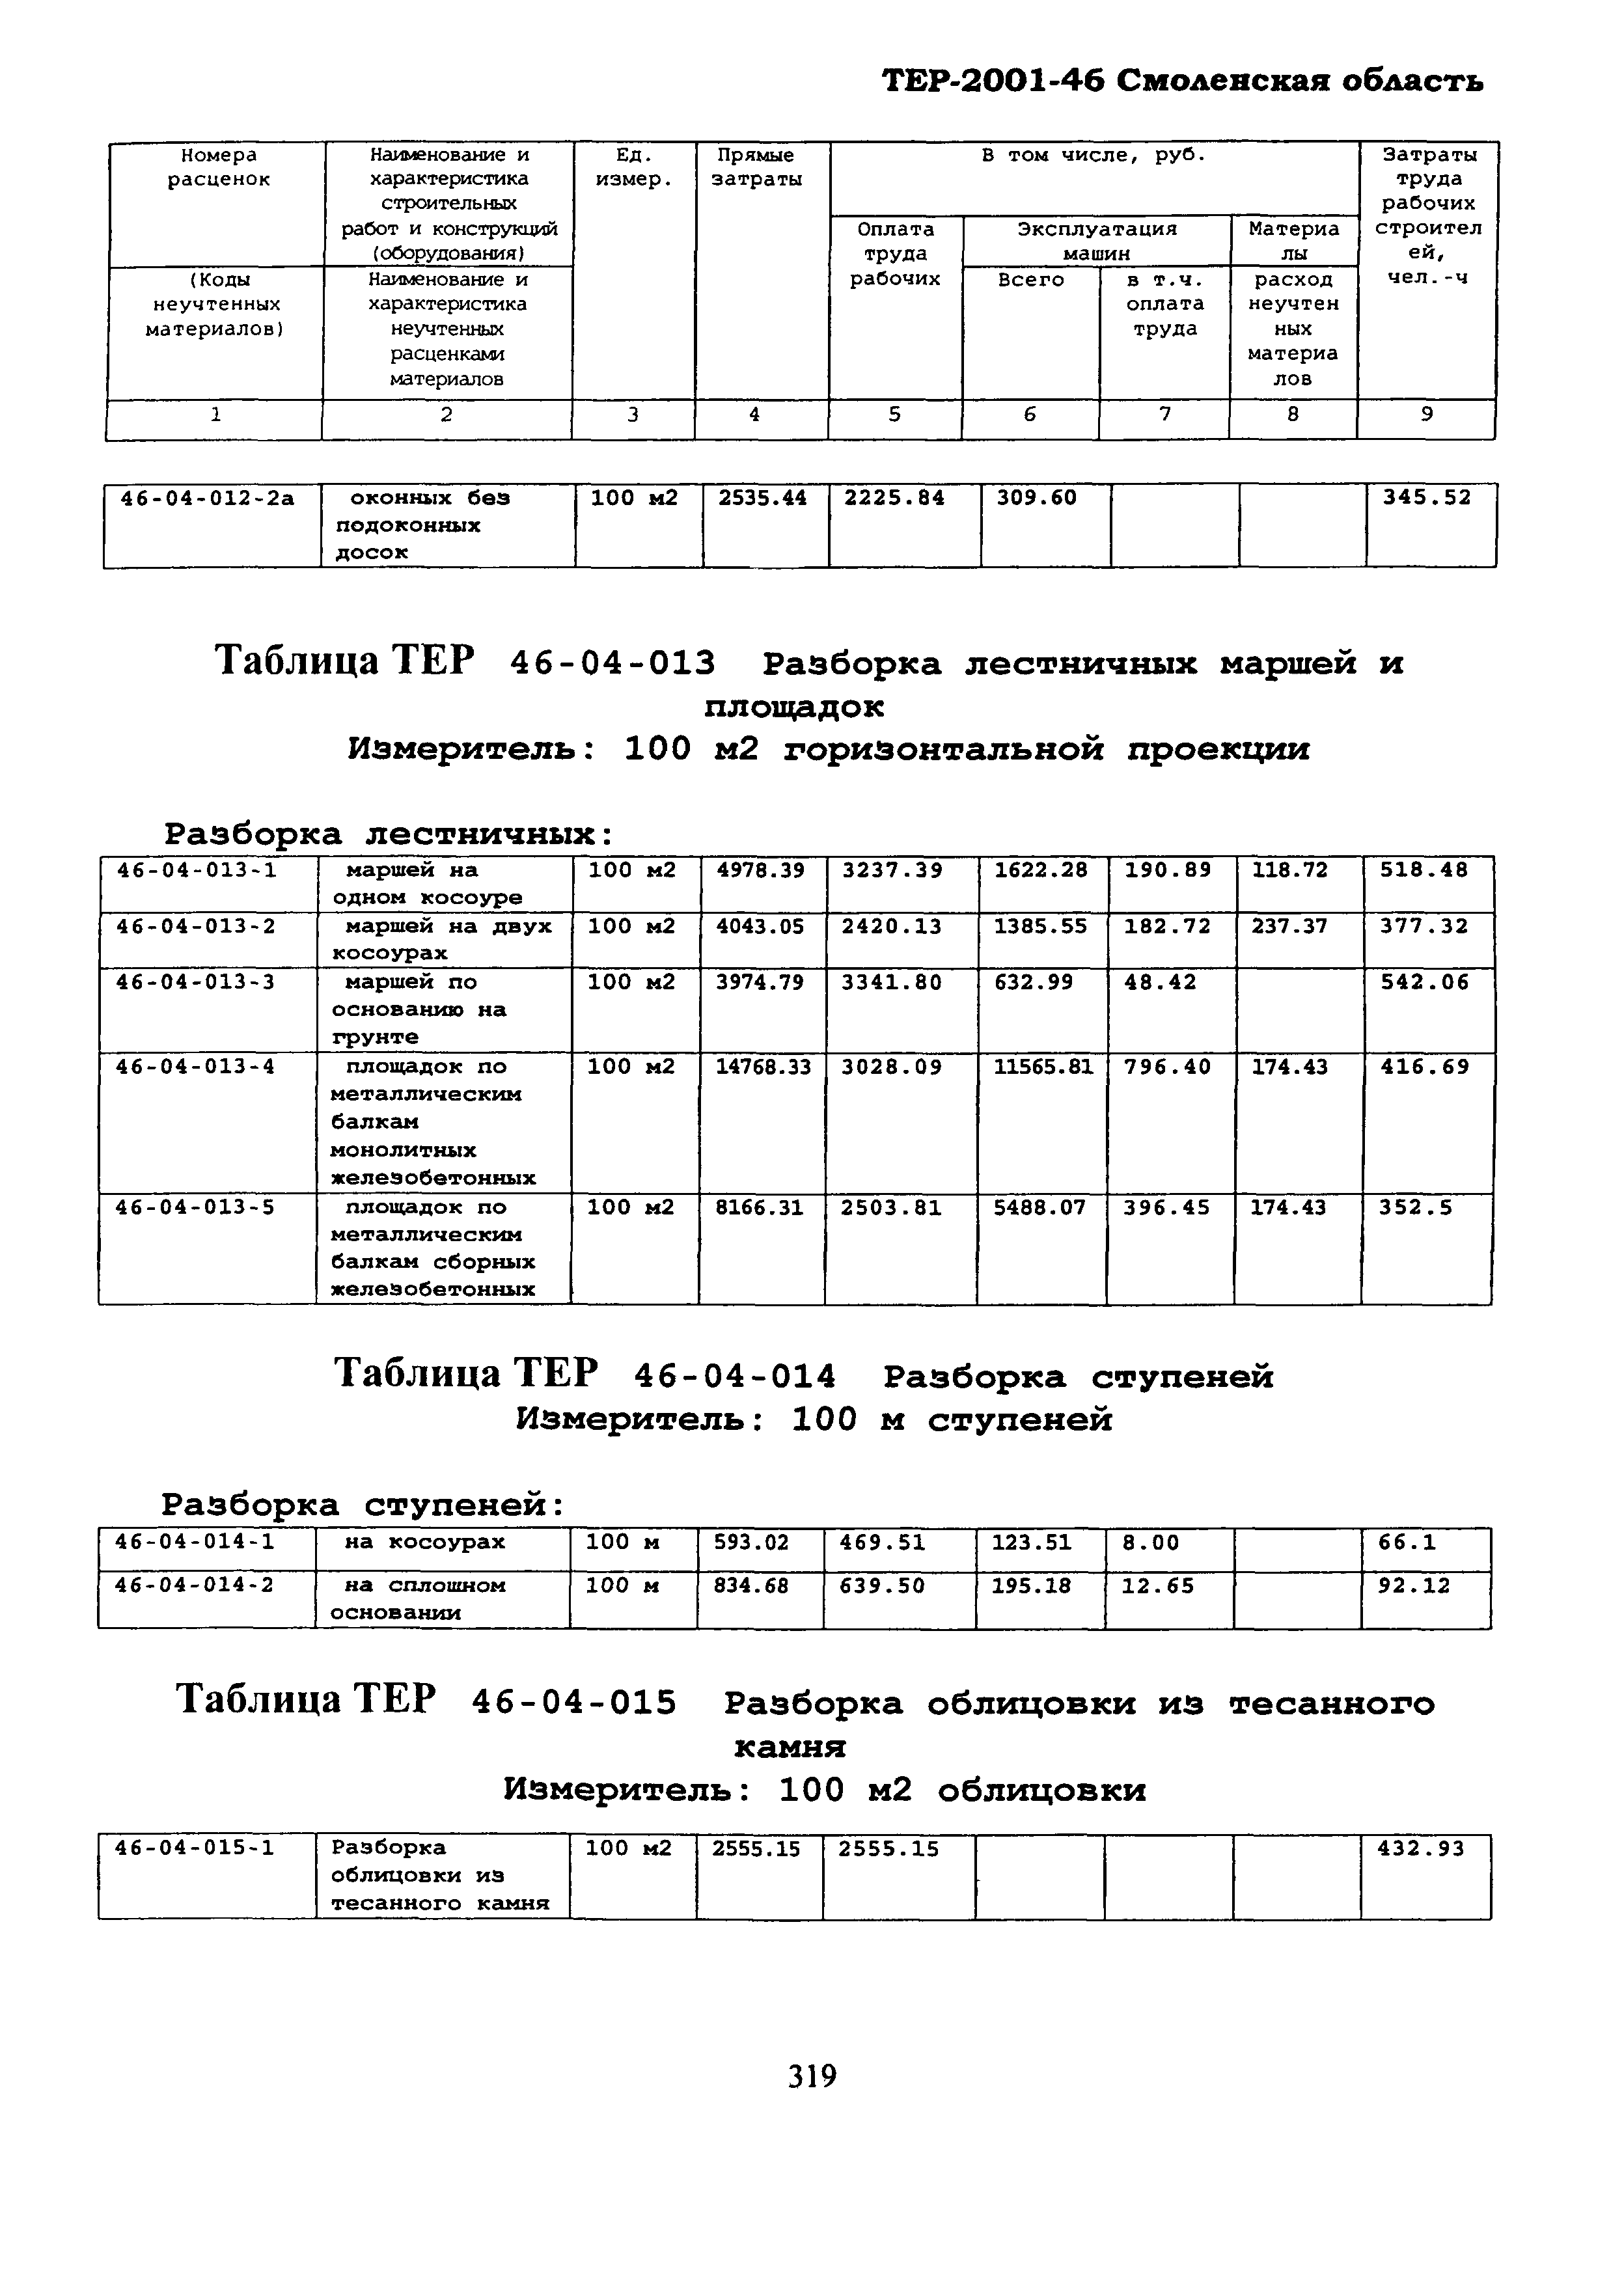 ТЕР Смоленская область 2001-46